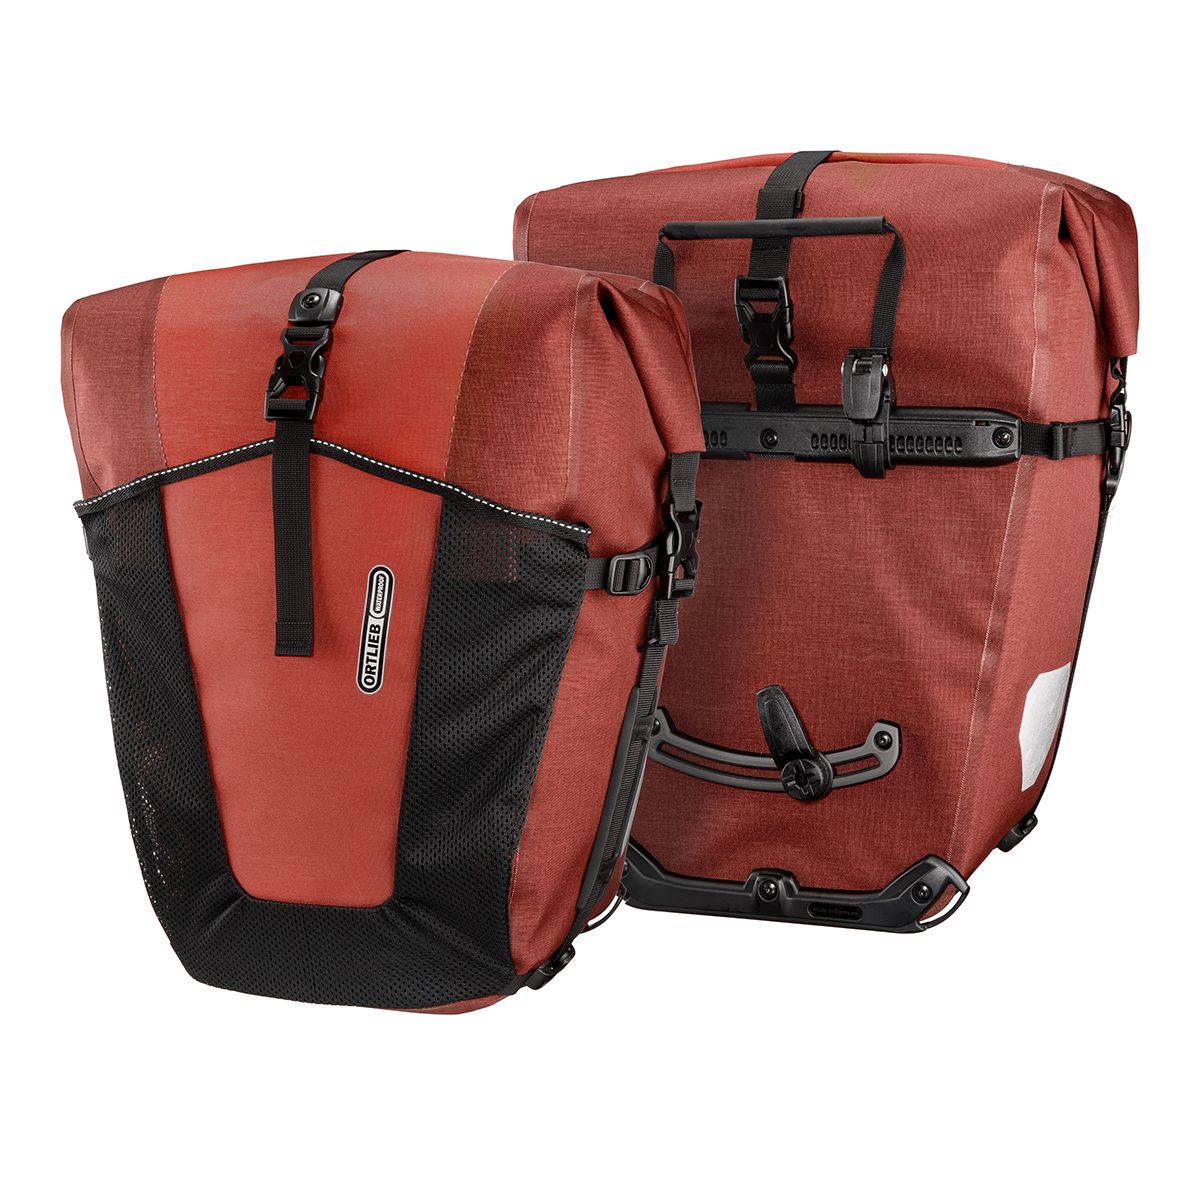 ORTLIEB Back Roller Pro Plus Set bestehend aus zwei Gepäckträgertaschen